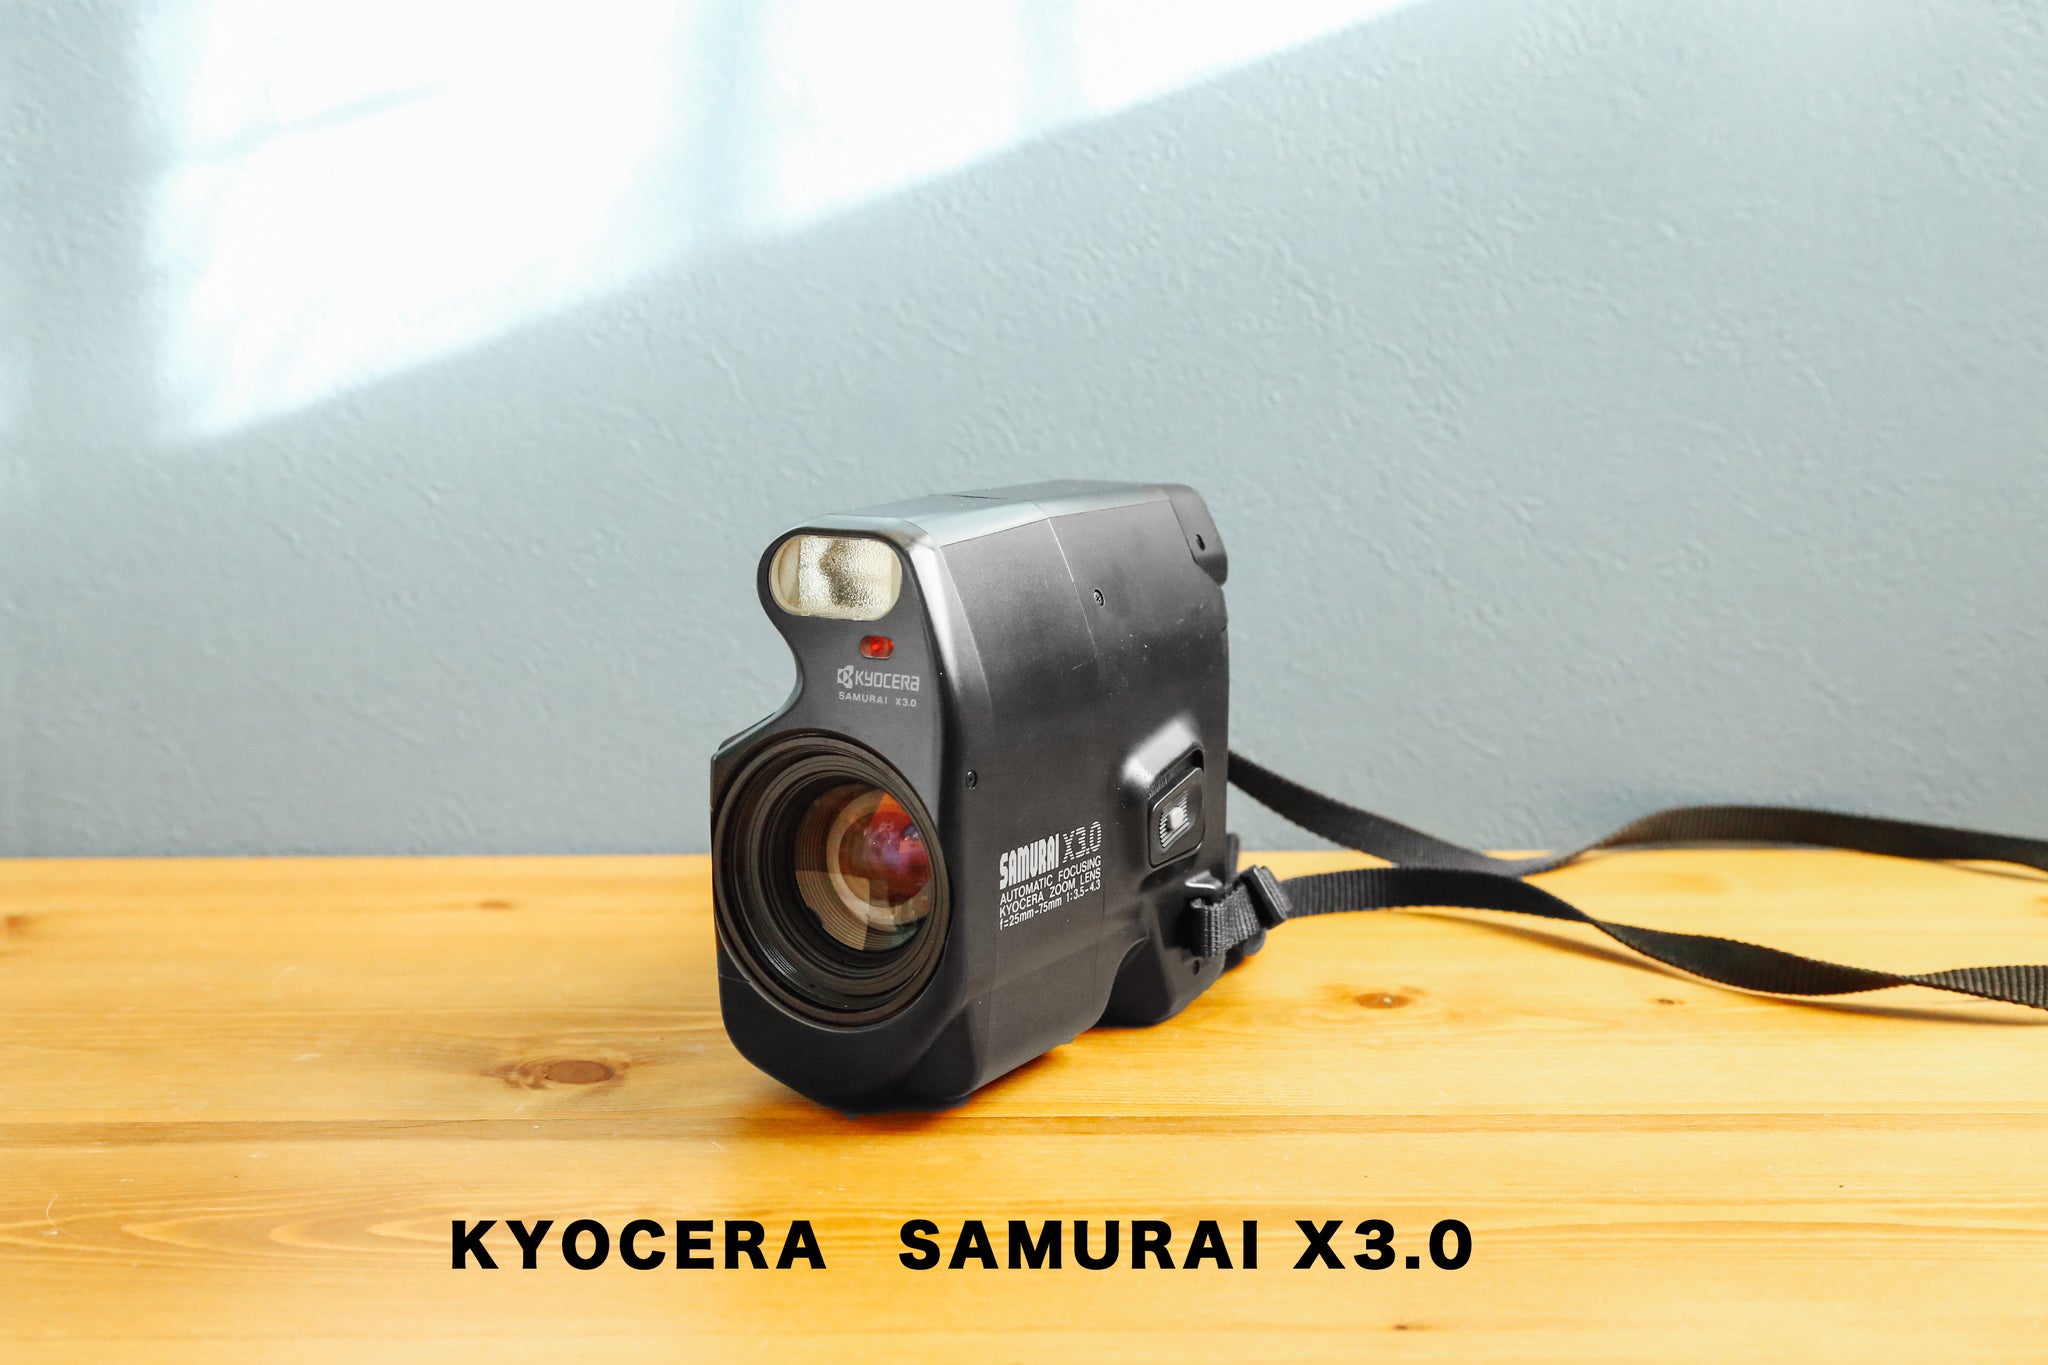 KYOCERA SAMURAI X3.0